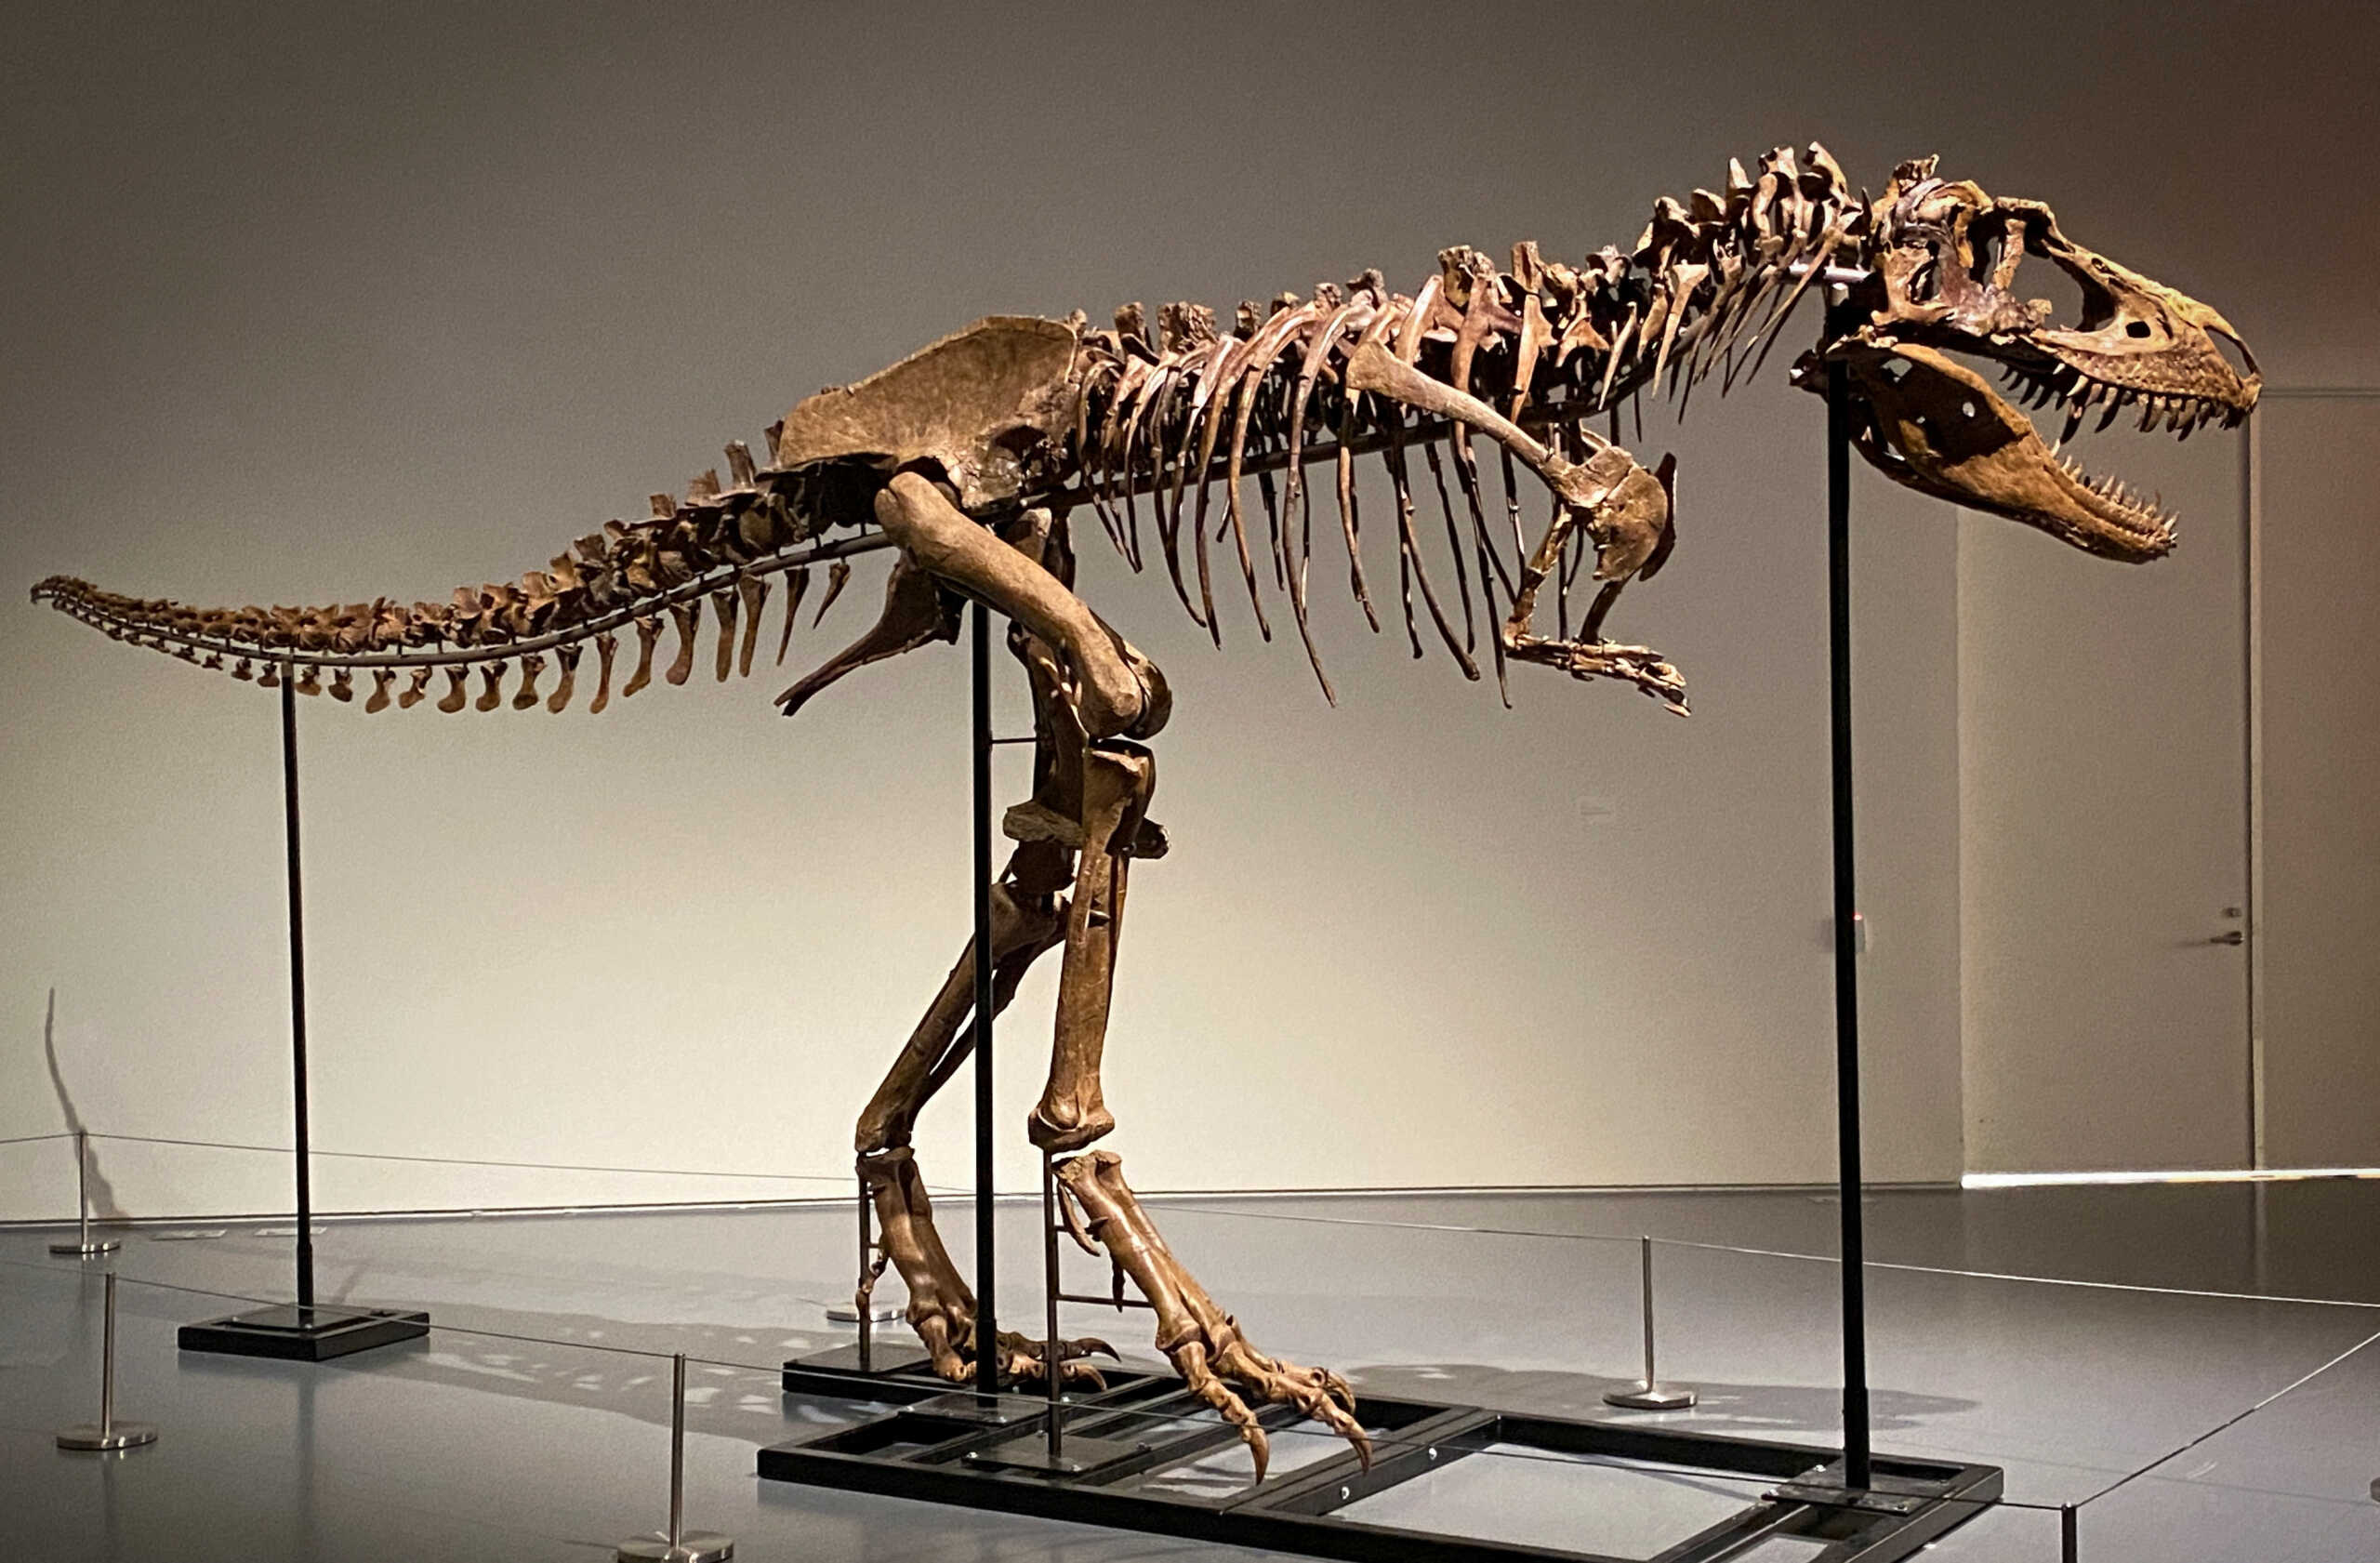 ΗΠΑ: Πουλήθηκε σε δημοπρασία σκελετός δεινοσαύρου έναντι 6,1 εκατομμυρίων δολαρίων